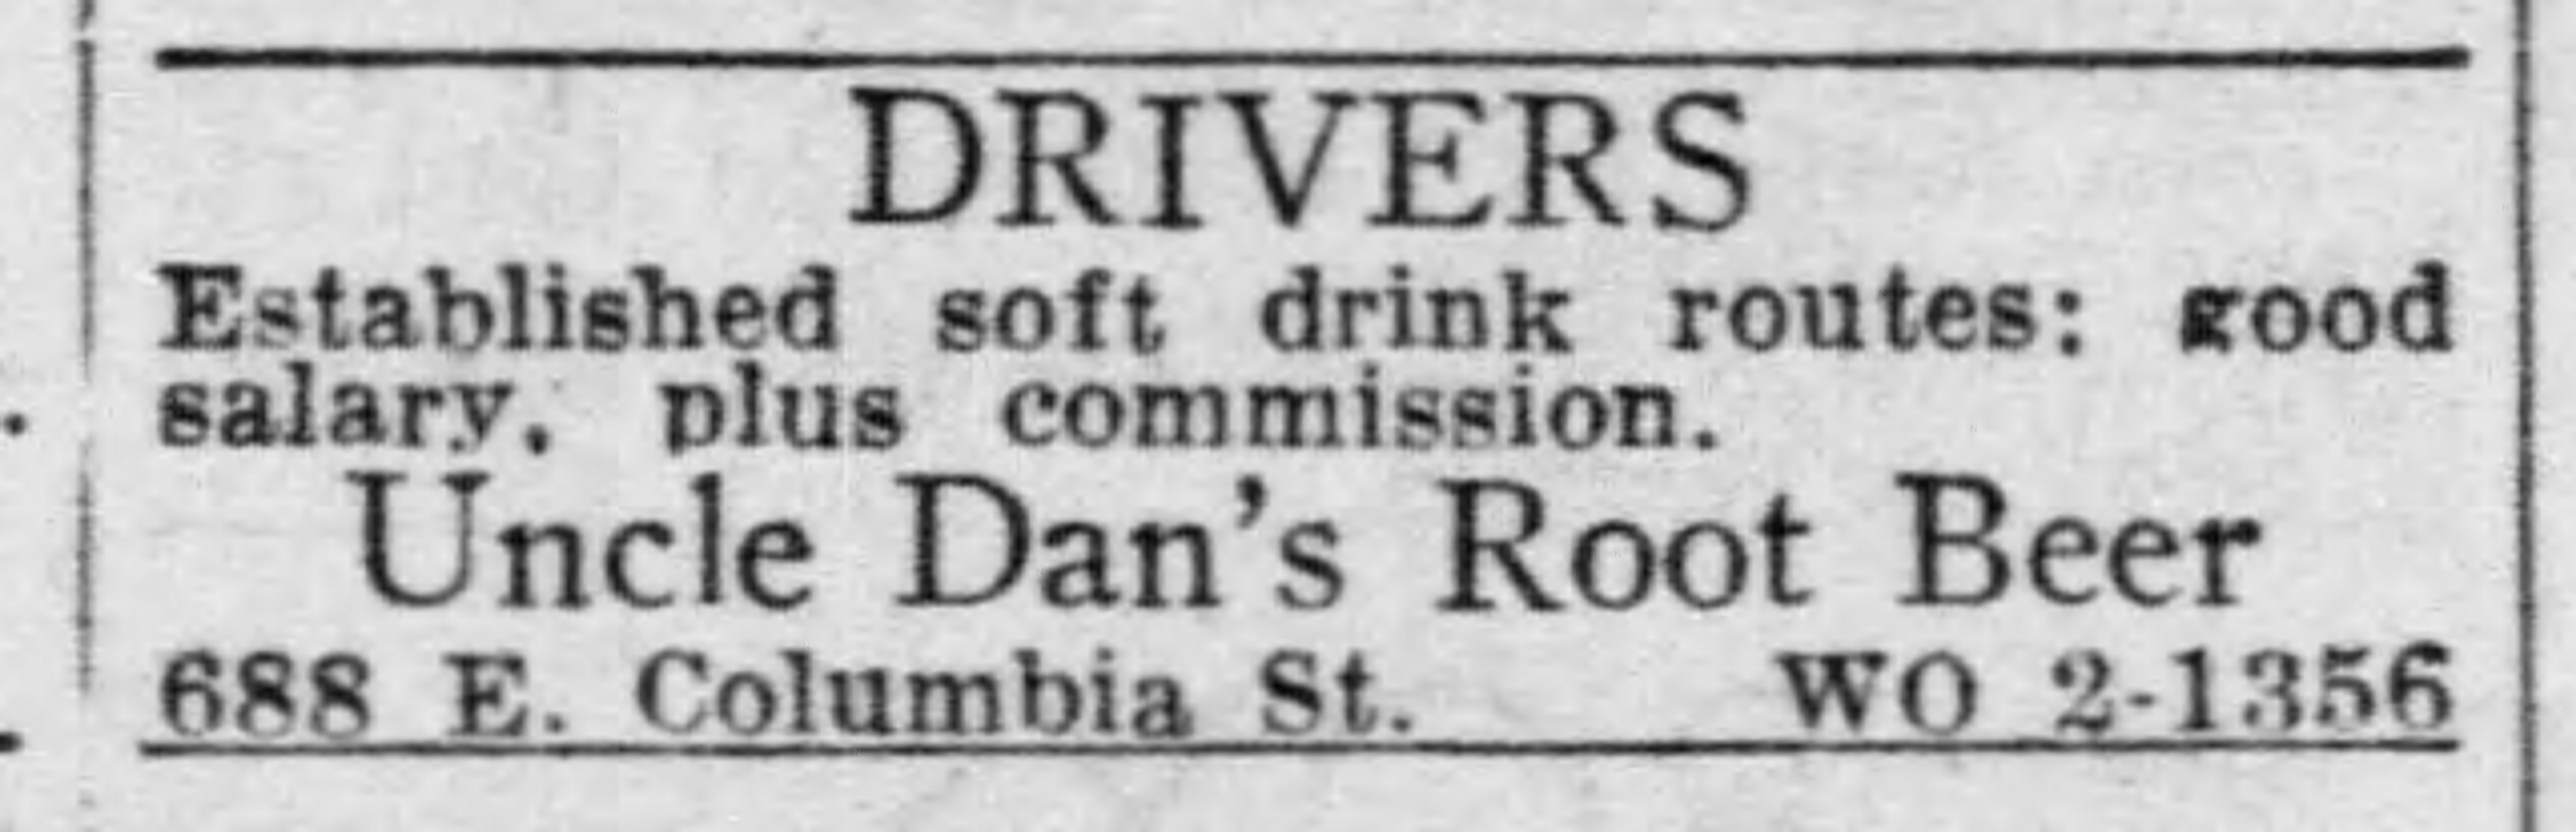 Uncle Dan's Root Beer_Detroit_Free_Press_Michigan_Mon__May_14__1951.jpg